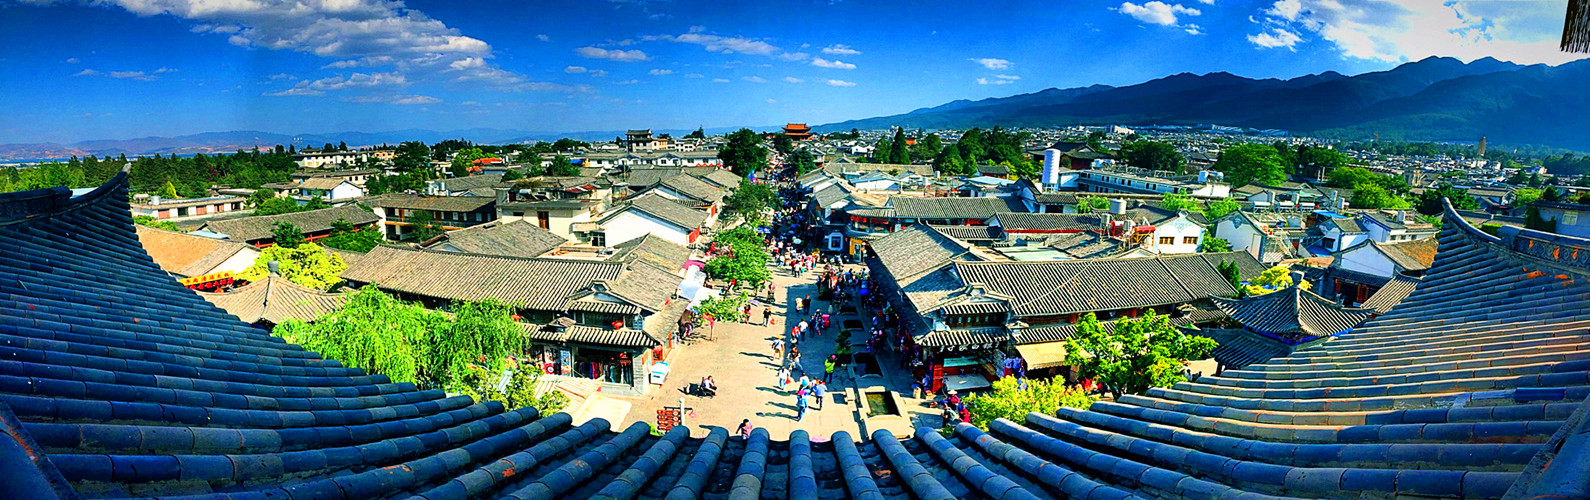 Yunnan Tours